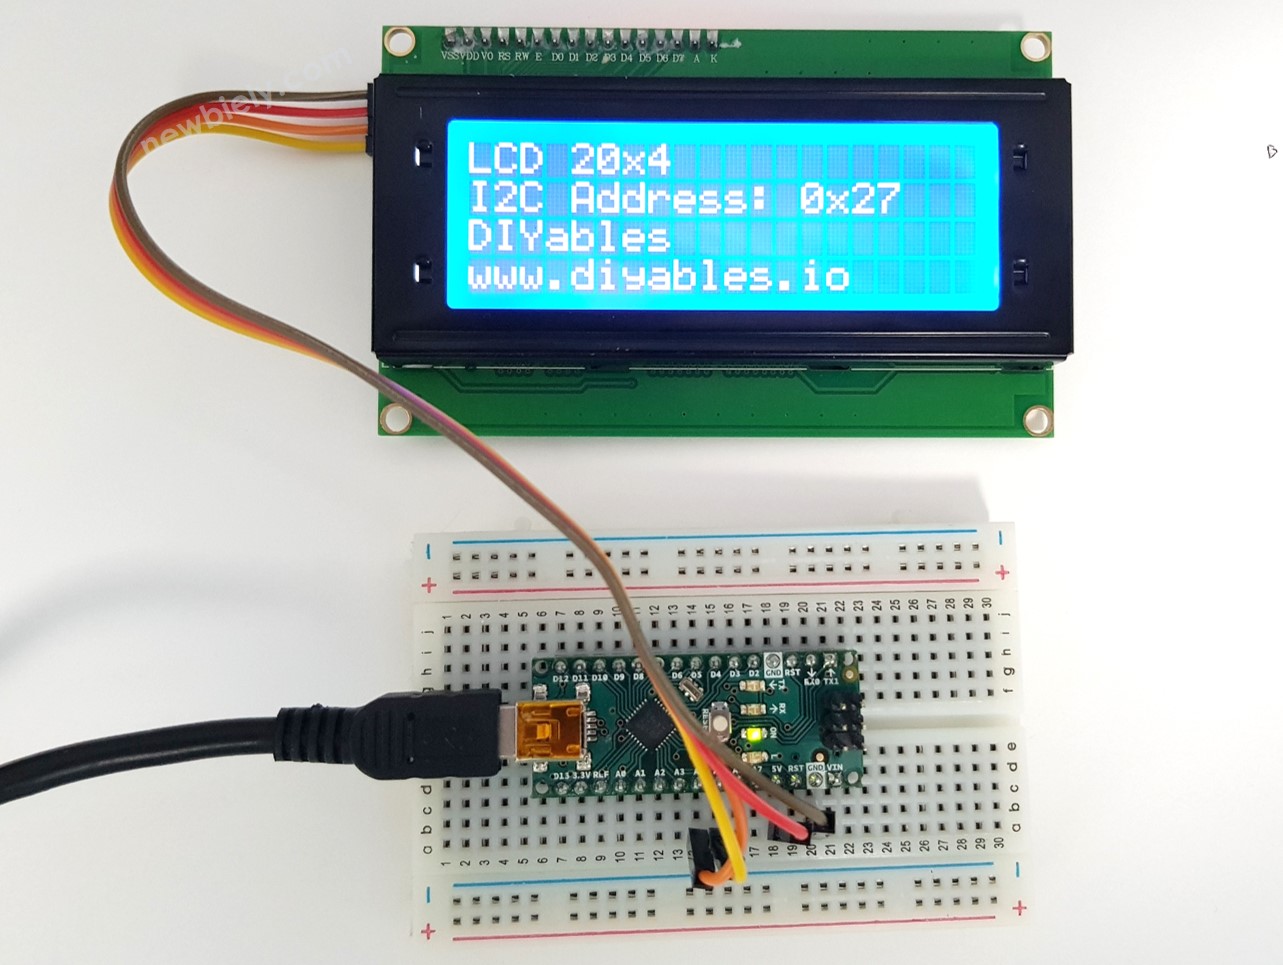 Afficher du texte sur un écran LCD avec Arduino Nano